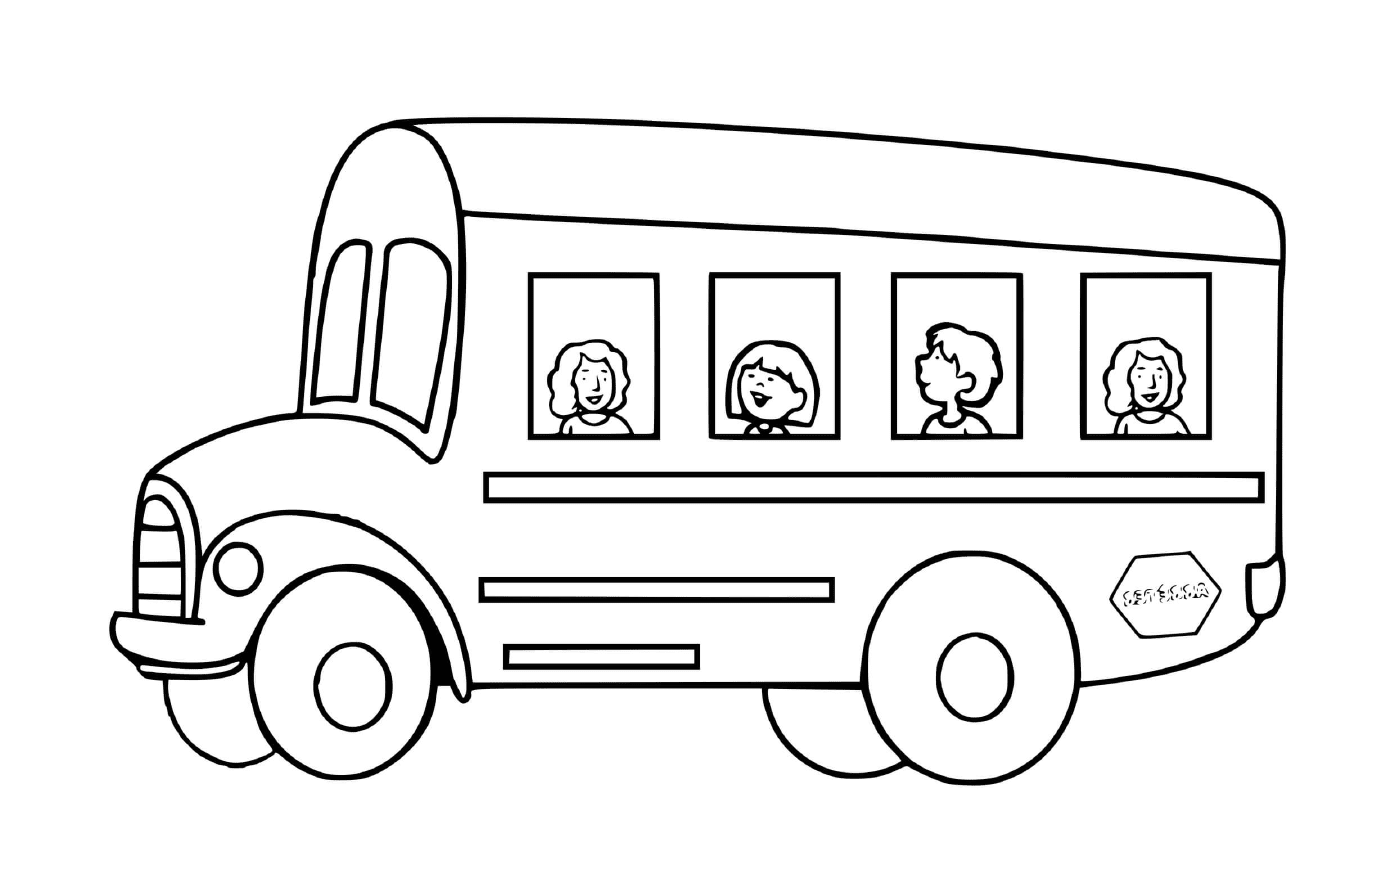  Школьный транспорт для детей: автобус 